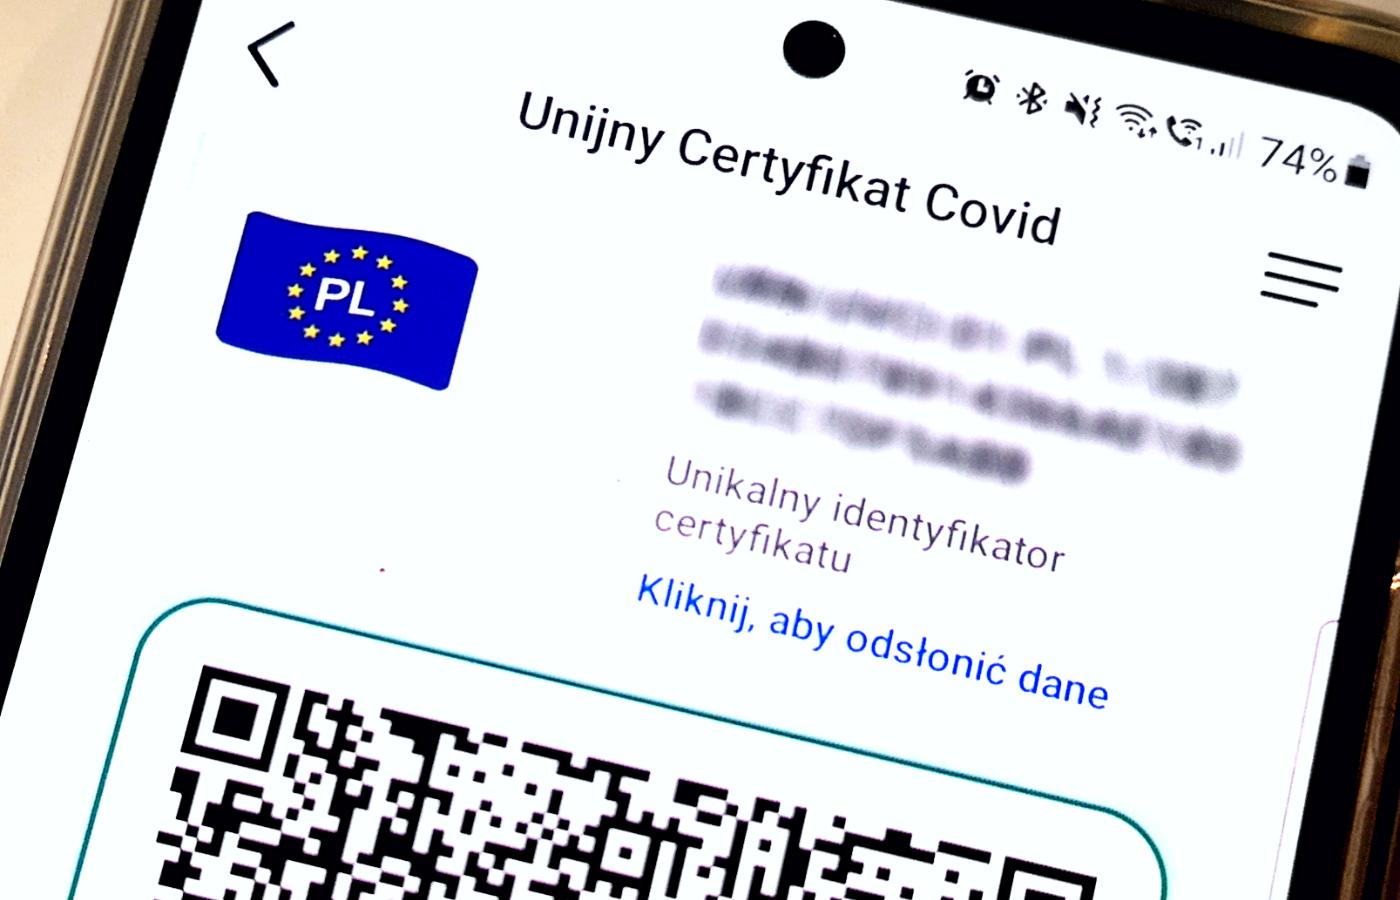 Unijny certyfikat covidowy uzyskiwany po pełnym zaszczepieniu